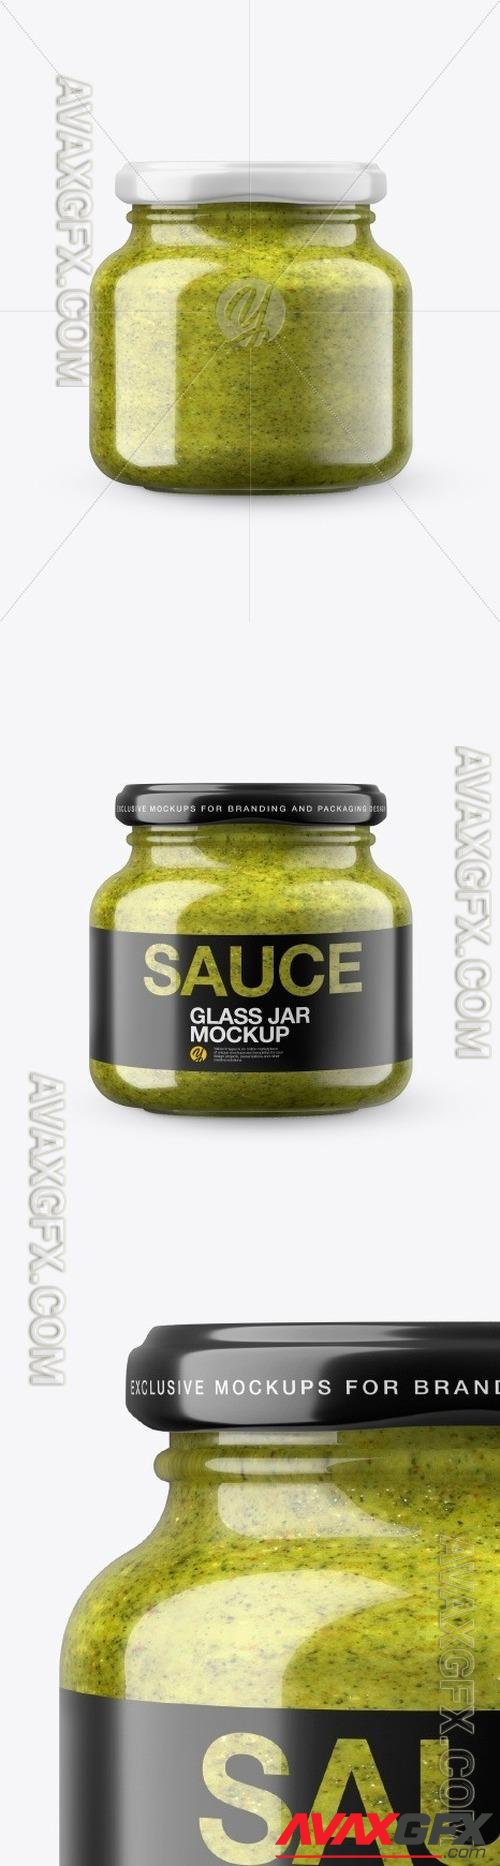 Glass Pesto Sauce Jar in Shrink Sleeve Mockup 50328 TIF